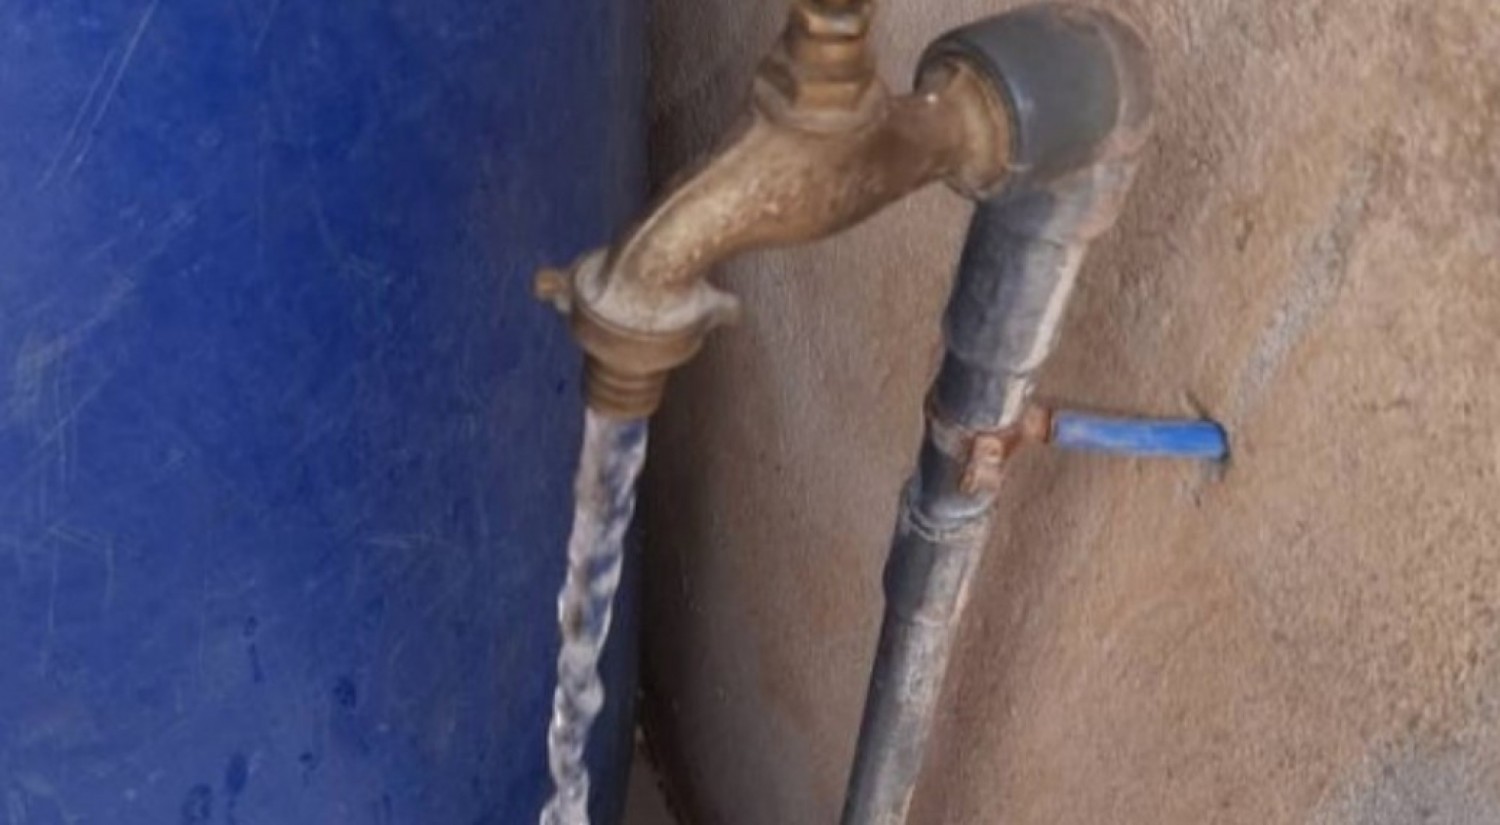 Côte d'Ivoire : Marahoué, après 19 jours d'interruption, l'eau potable enfin disponible dans les robinets